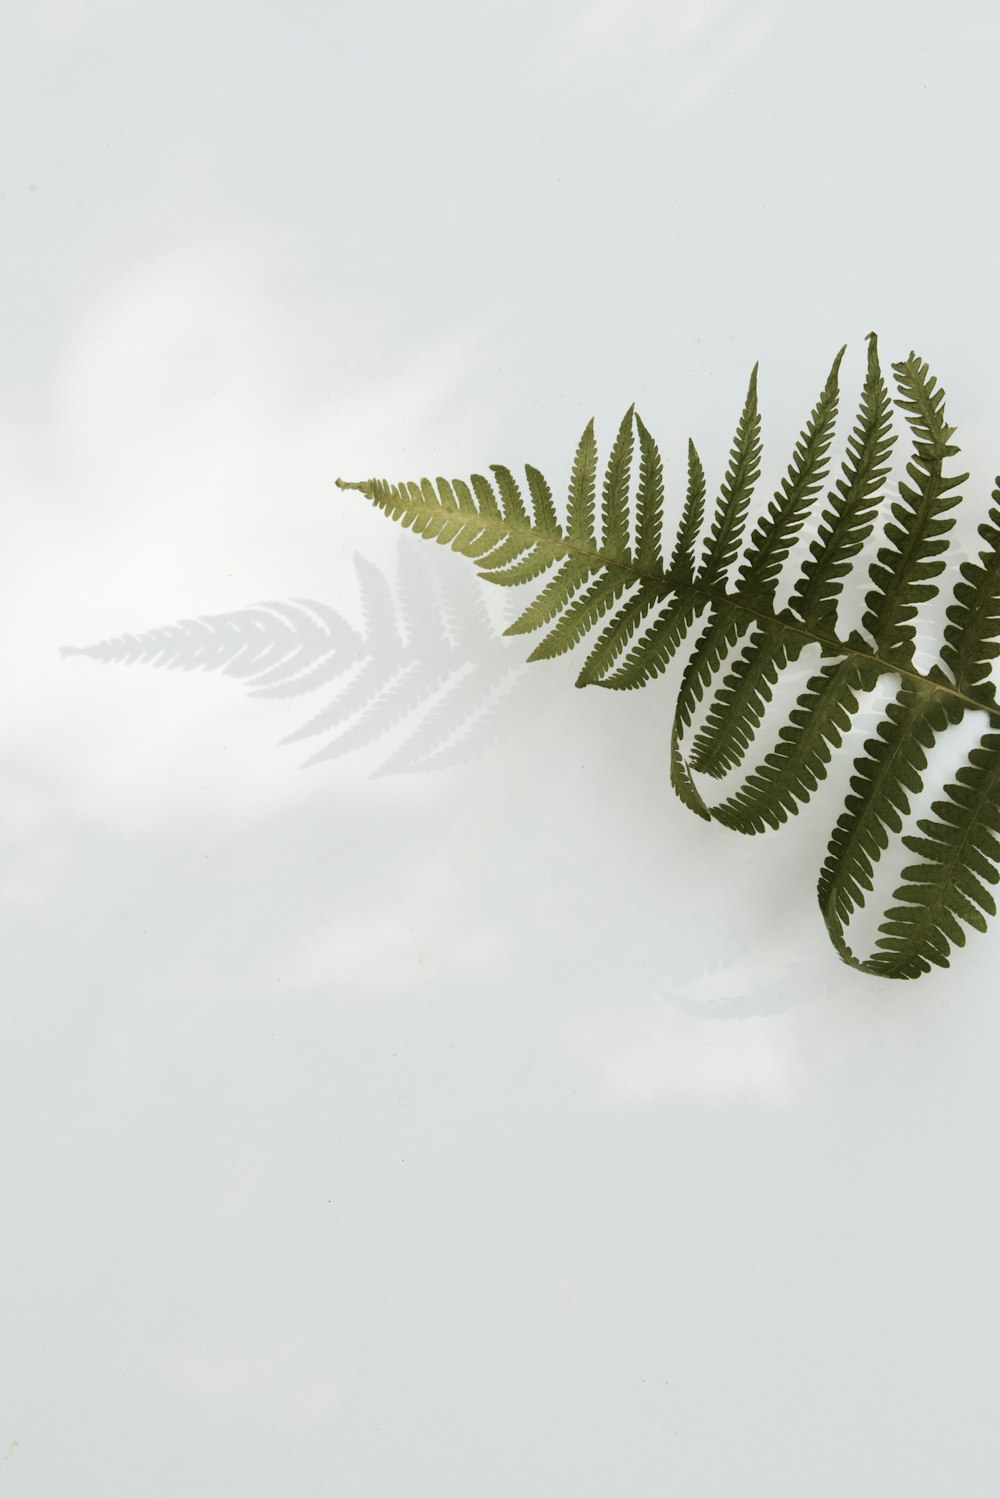 シダ植物のローアングル写真